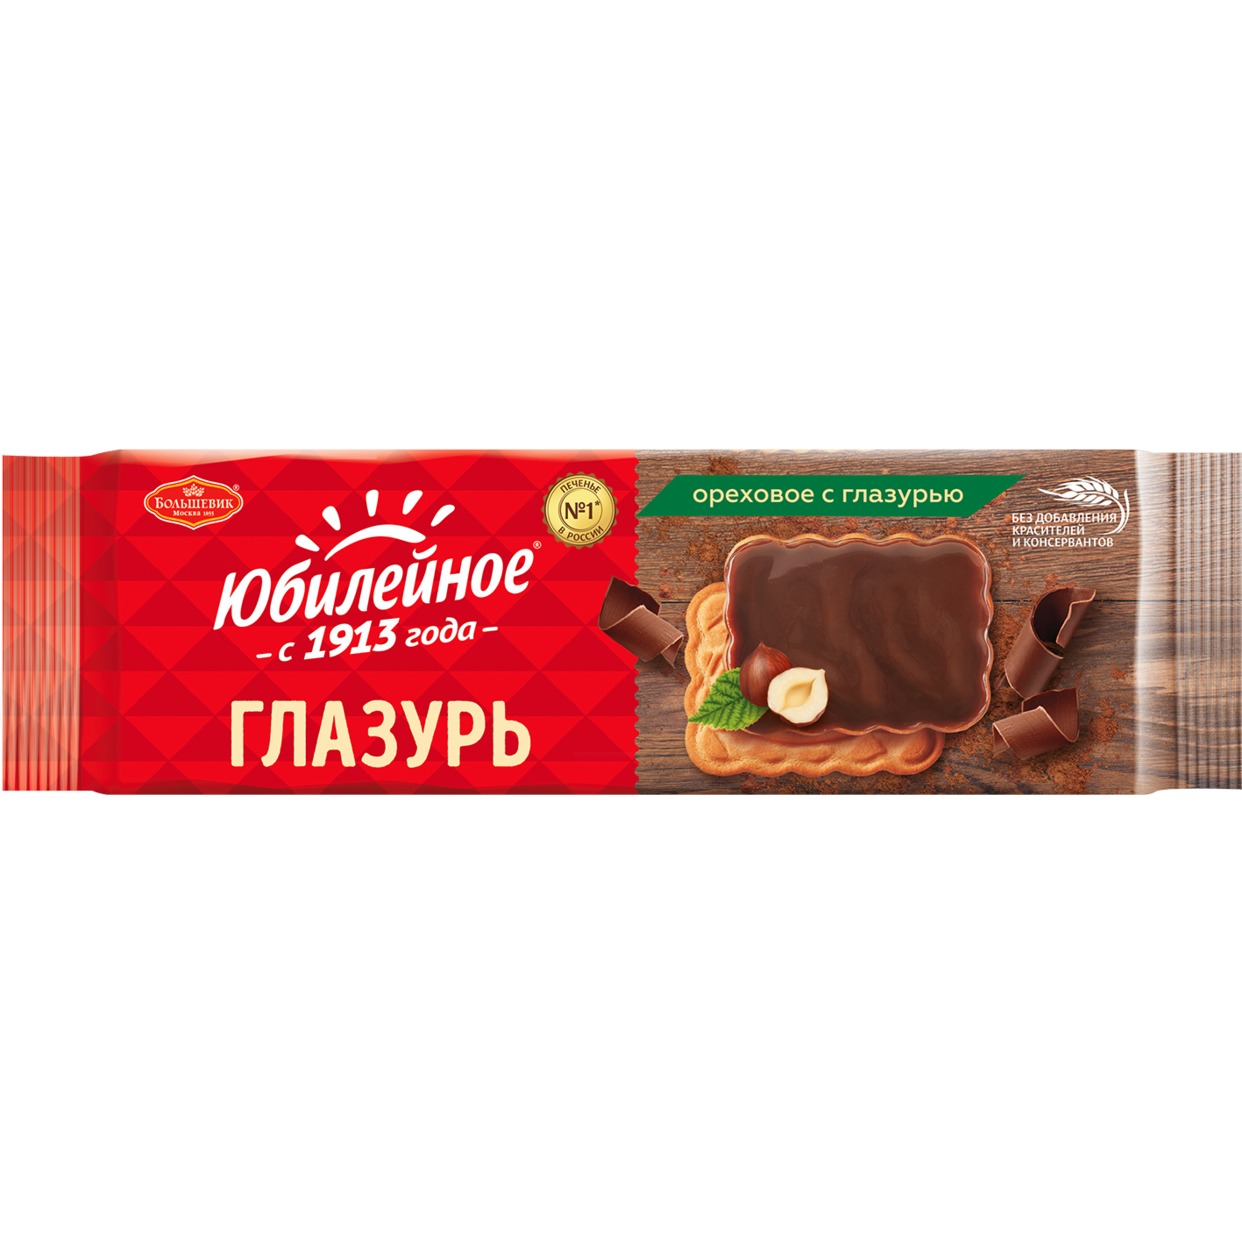 Печенье Юбилейное, с ореховой глазурью, 116 г по акции в Пятерочке